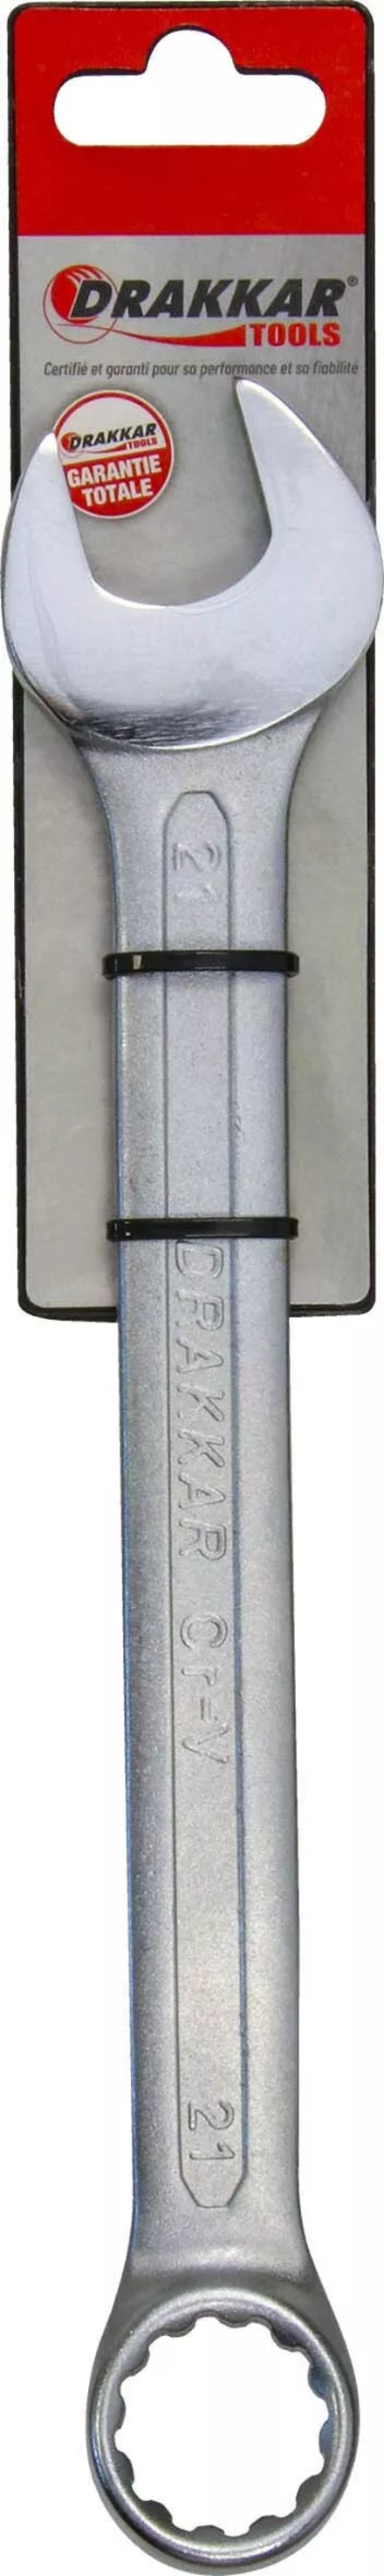 Cle mixte tete polie 21mm/carte dt DRAKKAR TOOLS - 13841